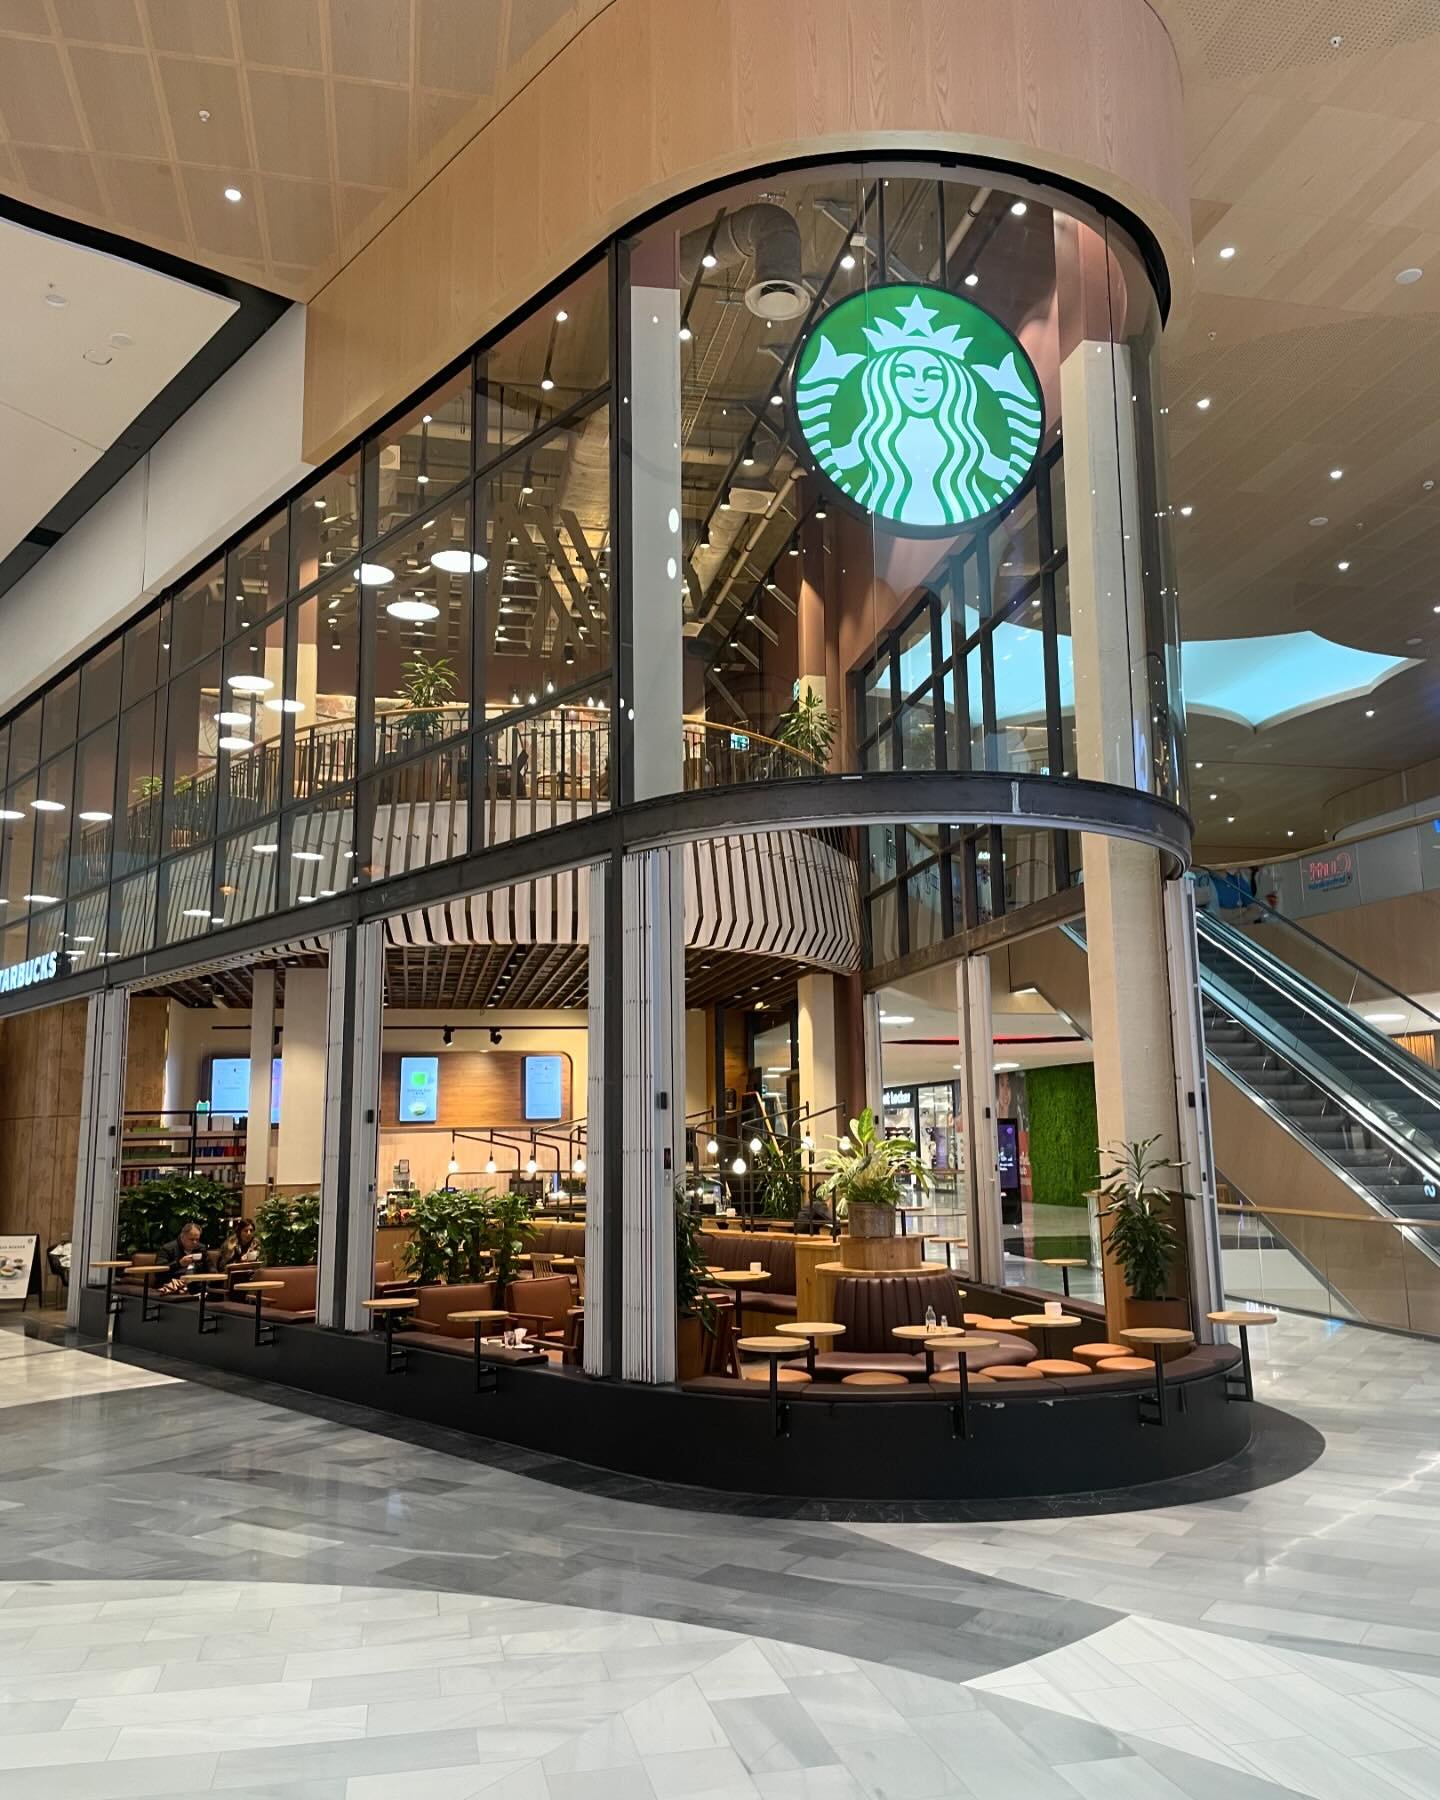 Nu &auml;r vi f&auml;rdiga med renoveringen av Starbucks Mall of Scandinavia.
Resultatet blev v&auml;ldigt bra!
Lycka till med er &rdquo;nya&rdquo; fina coffee shop Starbucks!